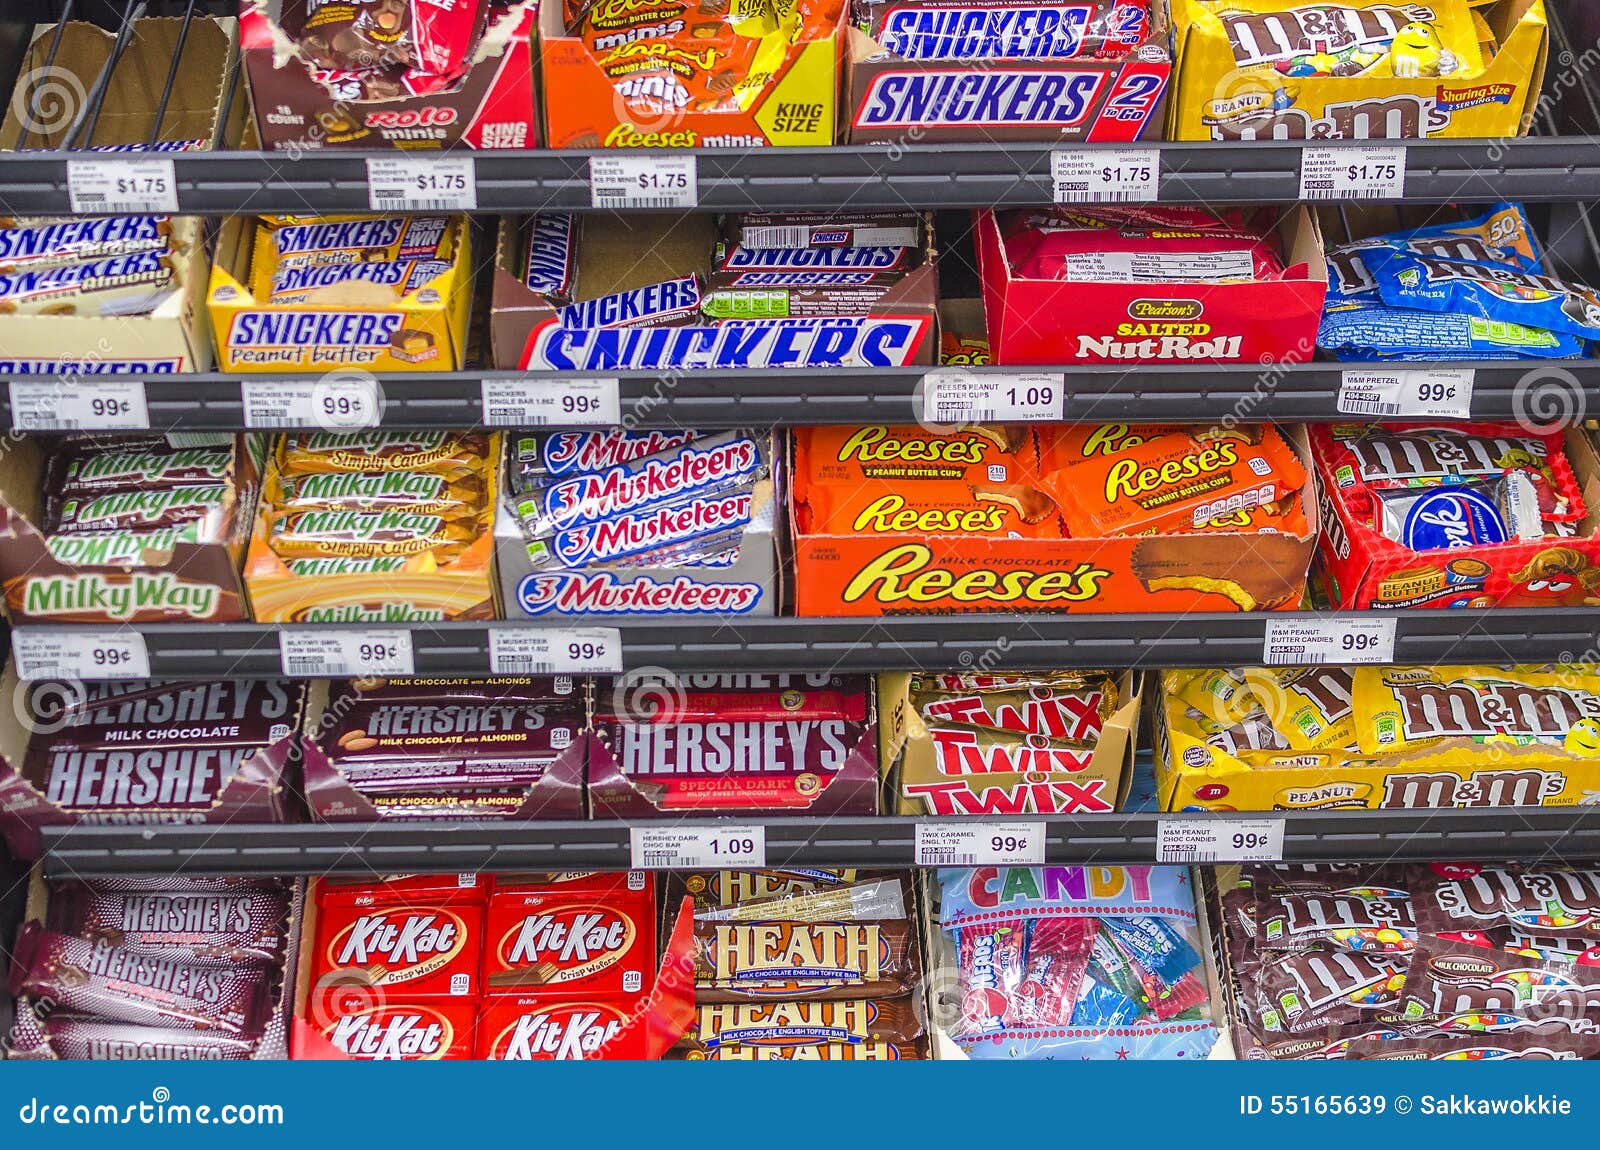 Maior rede de chocolates do mundo abre 'super store' na capital do doce